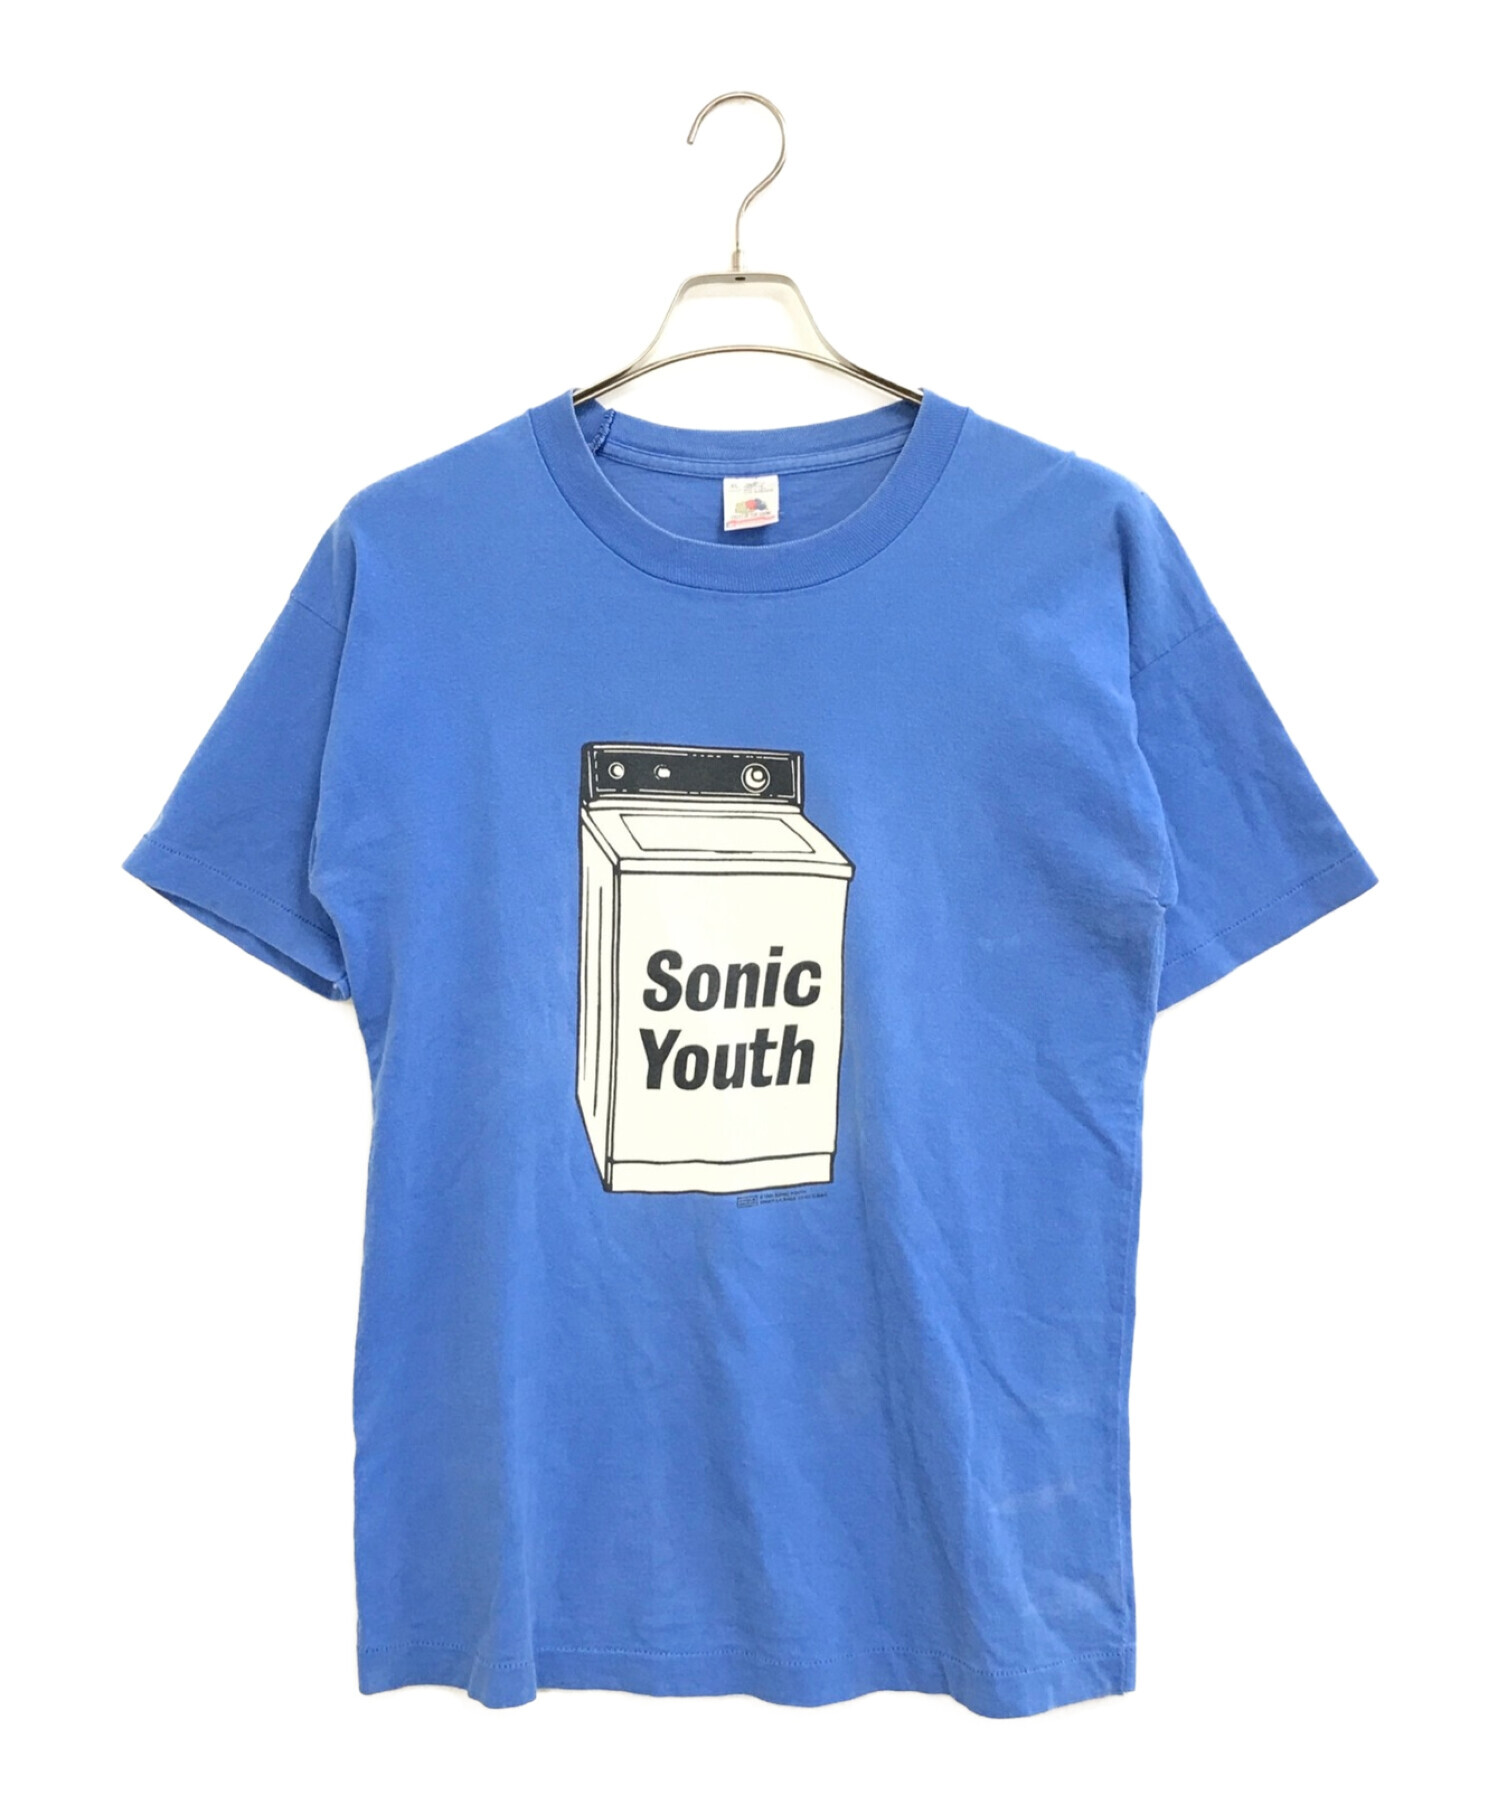 SONIC YOUTH ソニックユース Tシャツ XL sonic youth送料込みのお値段です